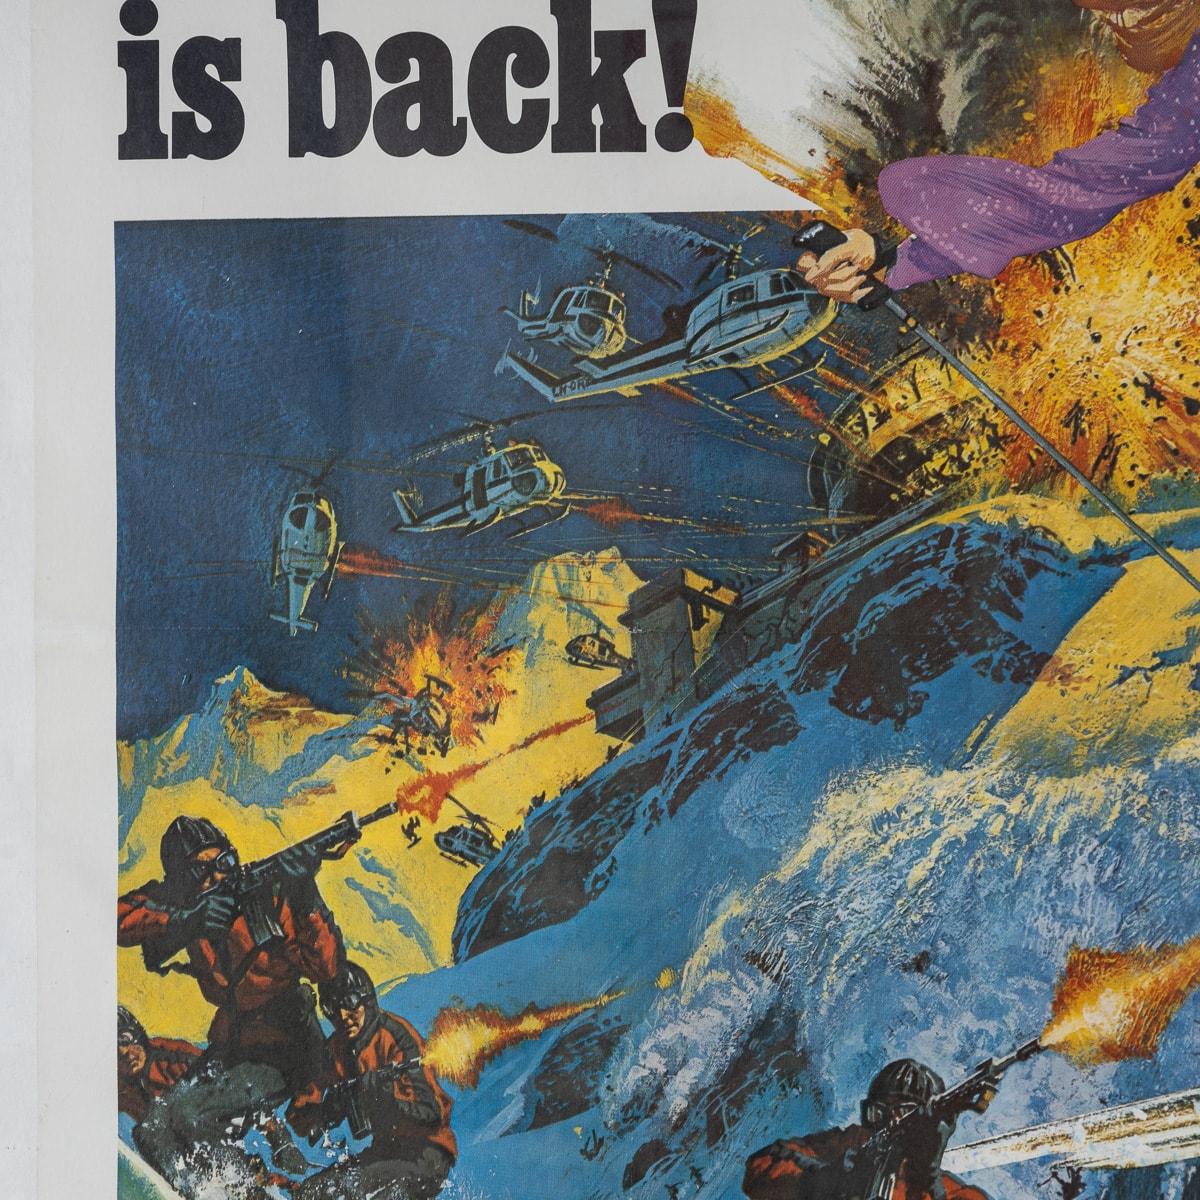 U.S Release James Bond 007 'On Her Majesty's Secret Service' Poster c.1969 For Sale 3